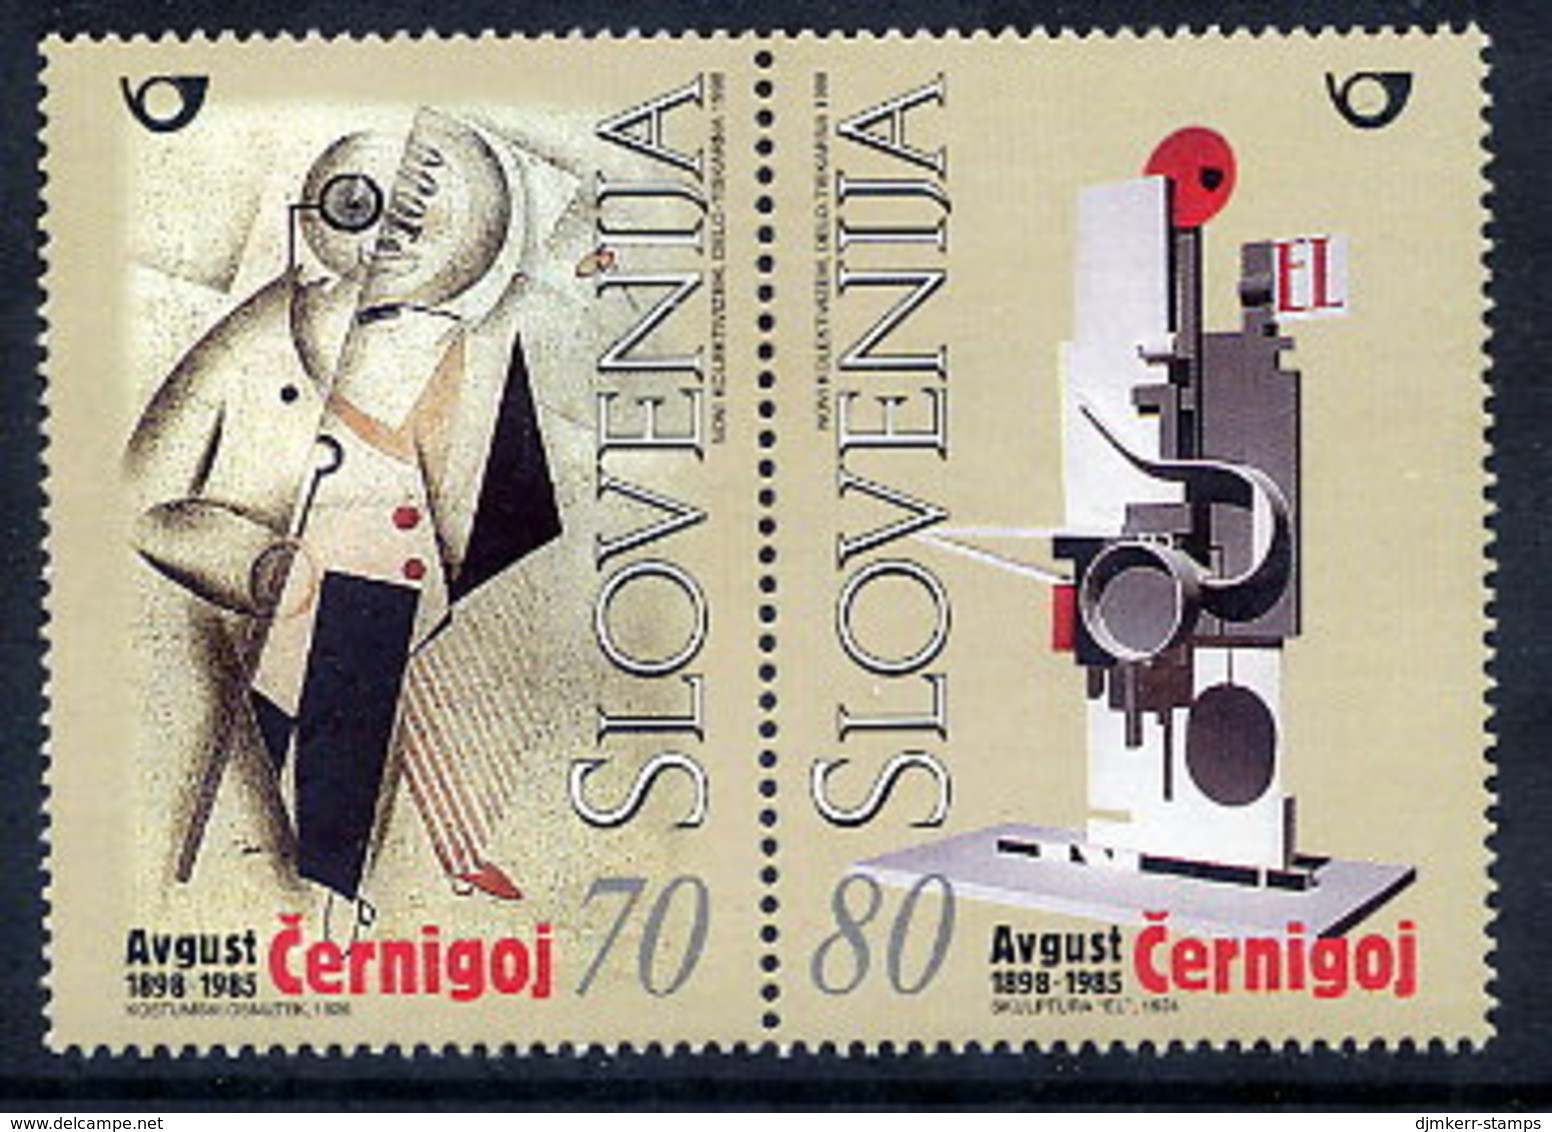 SLOVENIA 1998 August Cernigoj Centenary  MNH / **  Michel 237-38 - Slovenia